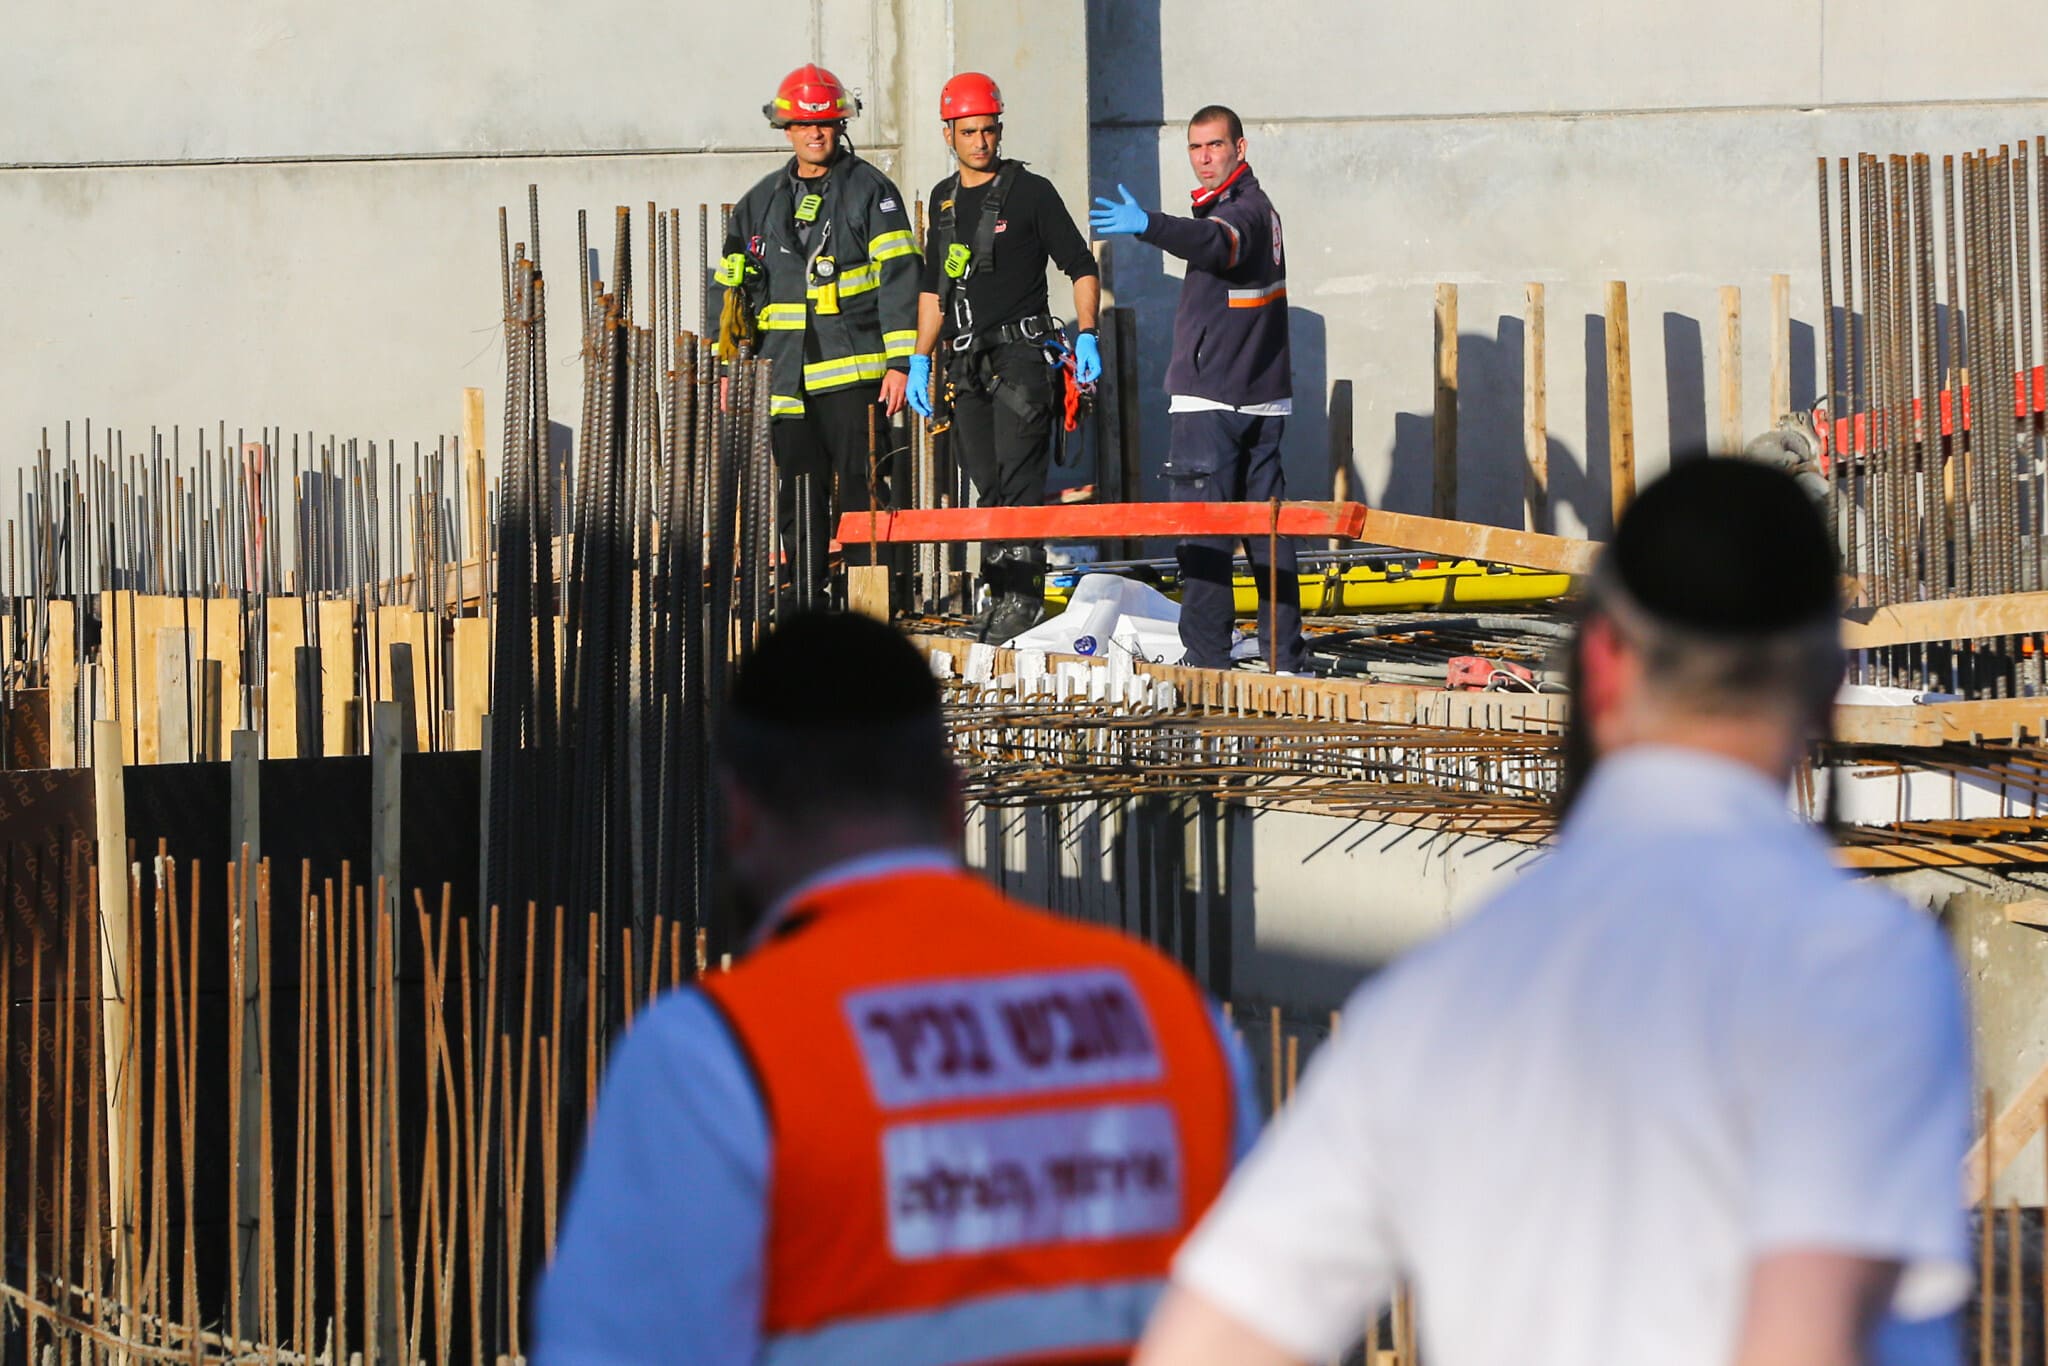 צוותי חילוץ ורפואה מגיעים לאתר בנייה בקרית גת שבו נהרג עובד בתאונת עבודה. דצמבר 2019. &#8220;אין תרבות בטיחות בישראל&#8221; (צילום: Flash90)